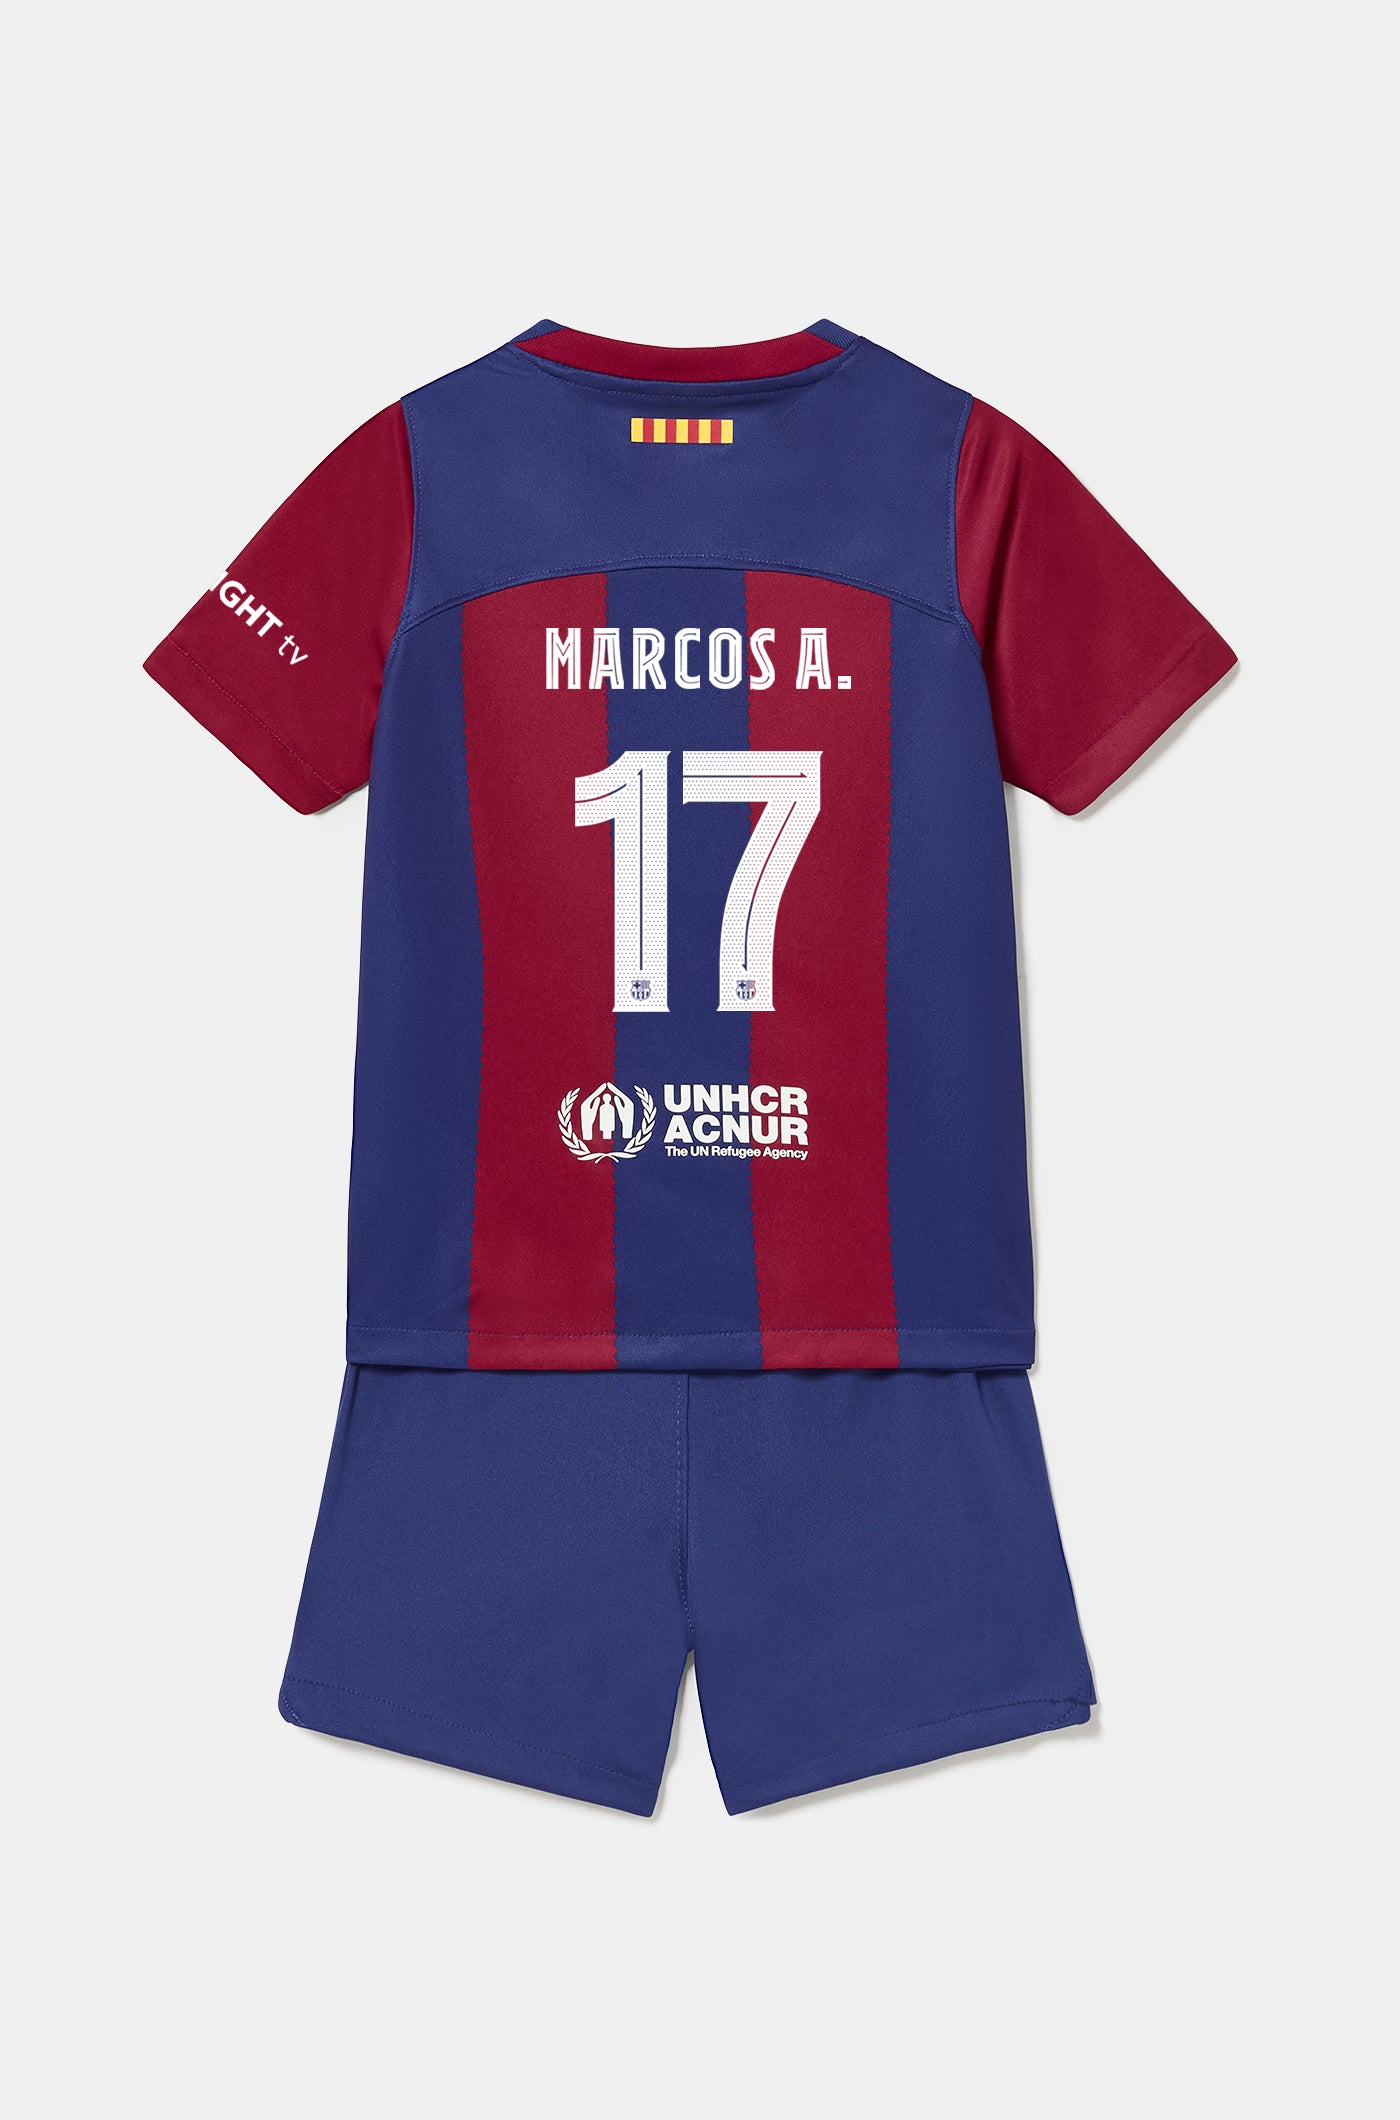 Conjunt primer equipament FC Barcelona 23/24 - Nen/a petit/a - MARCOS A. 